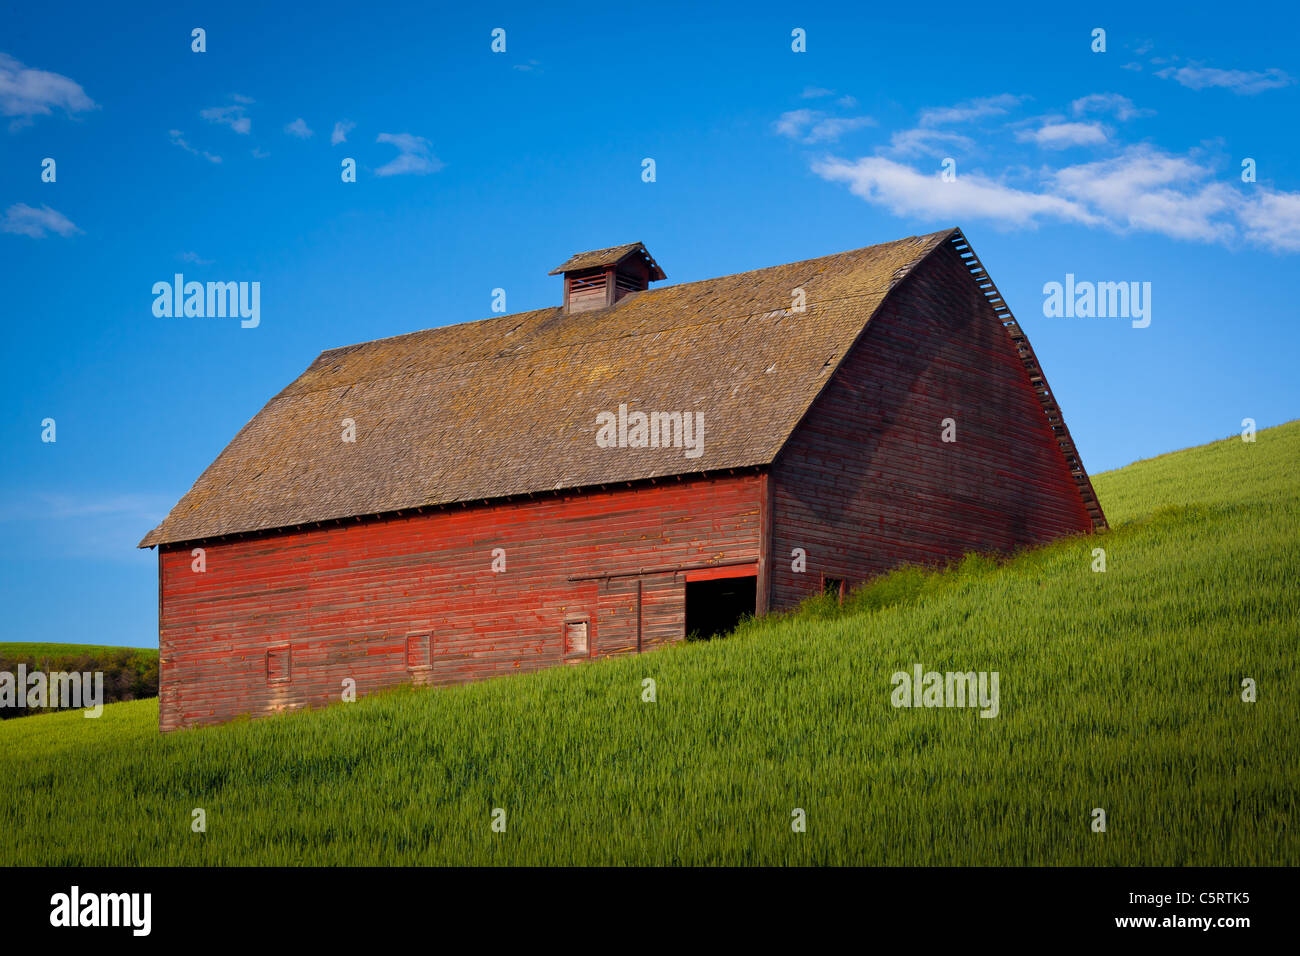 Scheune Gebäude im Bereich landwirtschaftliche Palouse des östlichen US-Bundesstaat Washington. Stockfoto